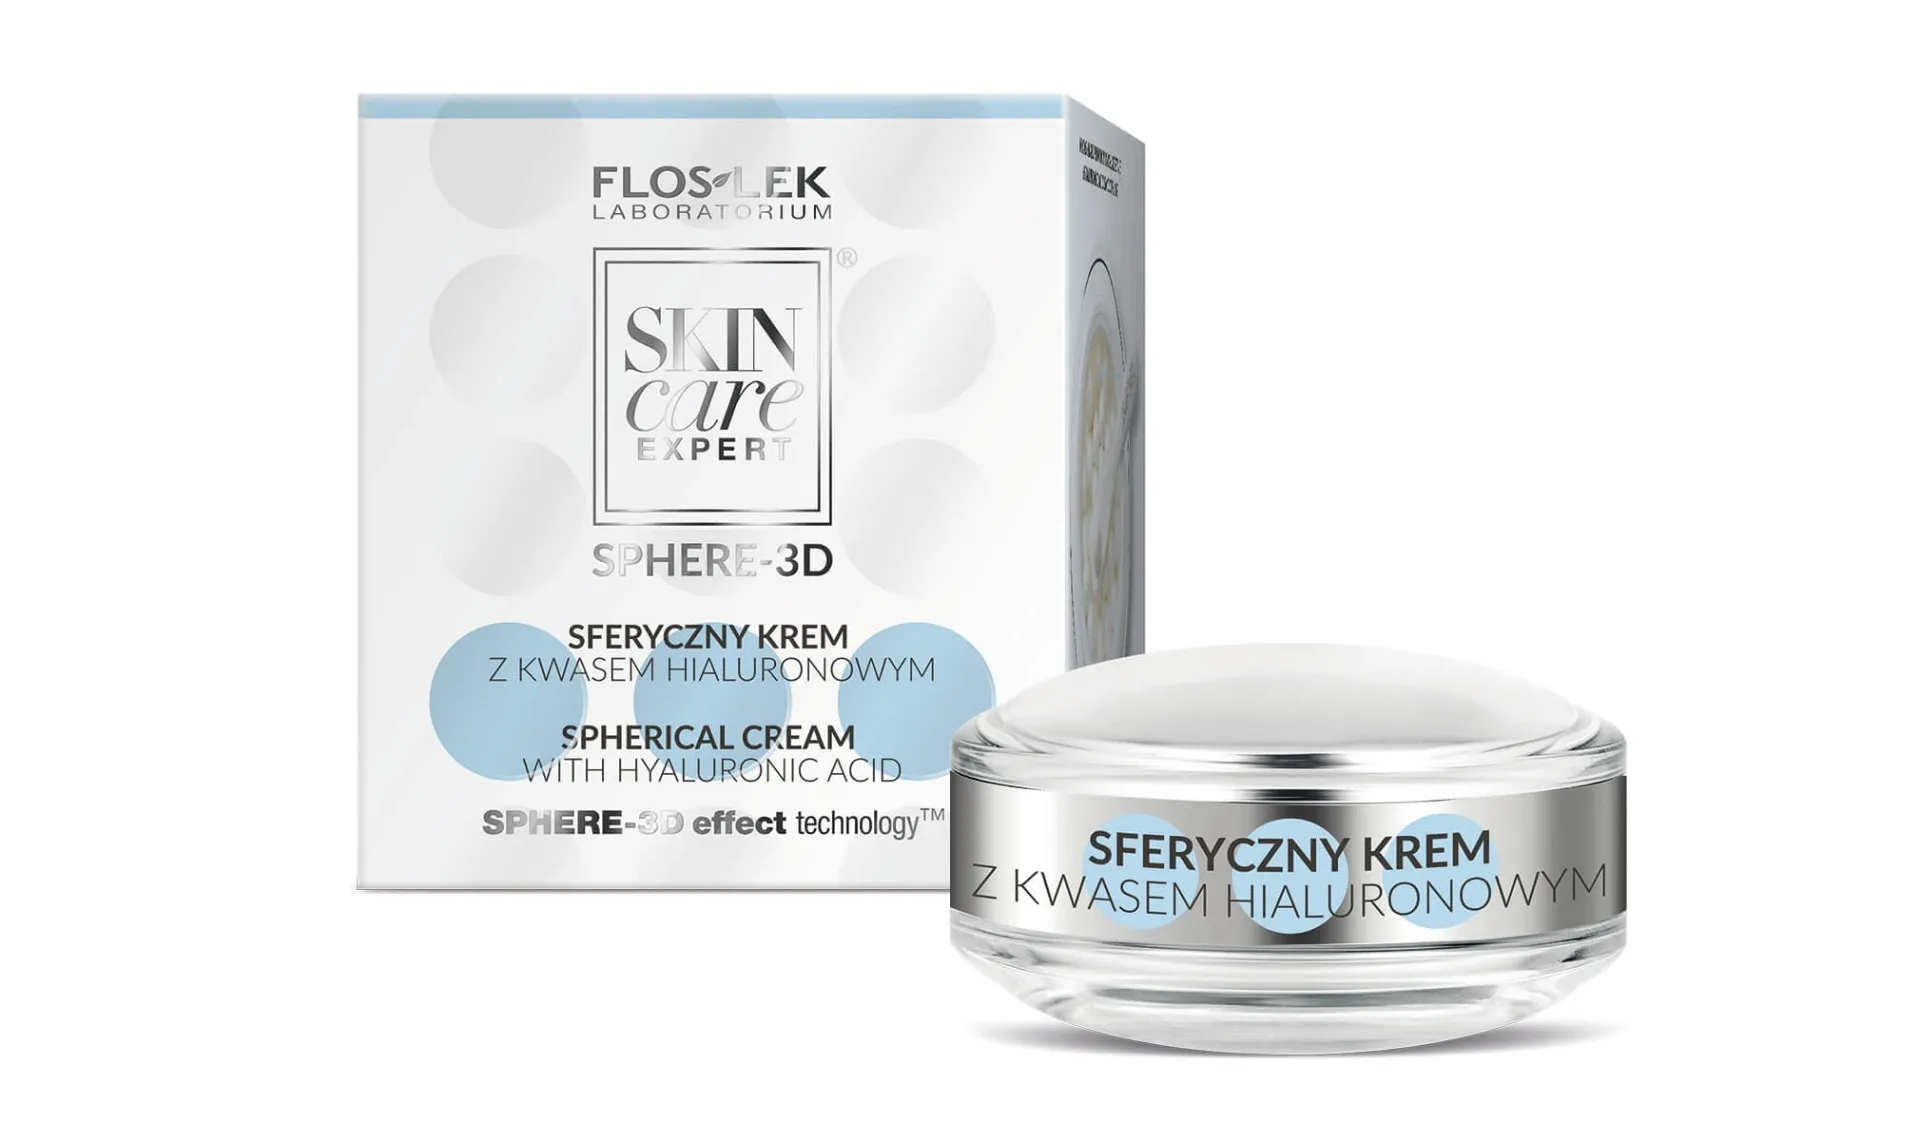 Flos-Lek Skin Care Expert Sphere 3D, sferyczny krem z kwasem hialuronowym, 11,5 g